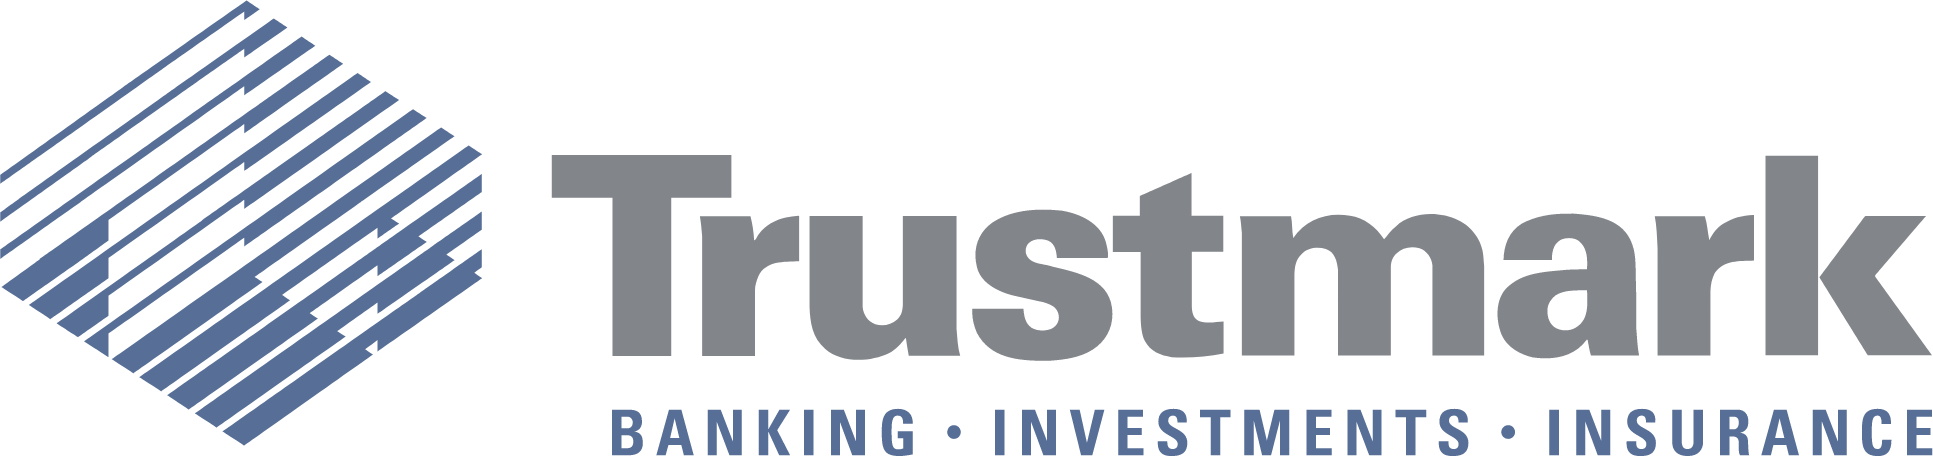 Trustmark logo large (transparent PNG)